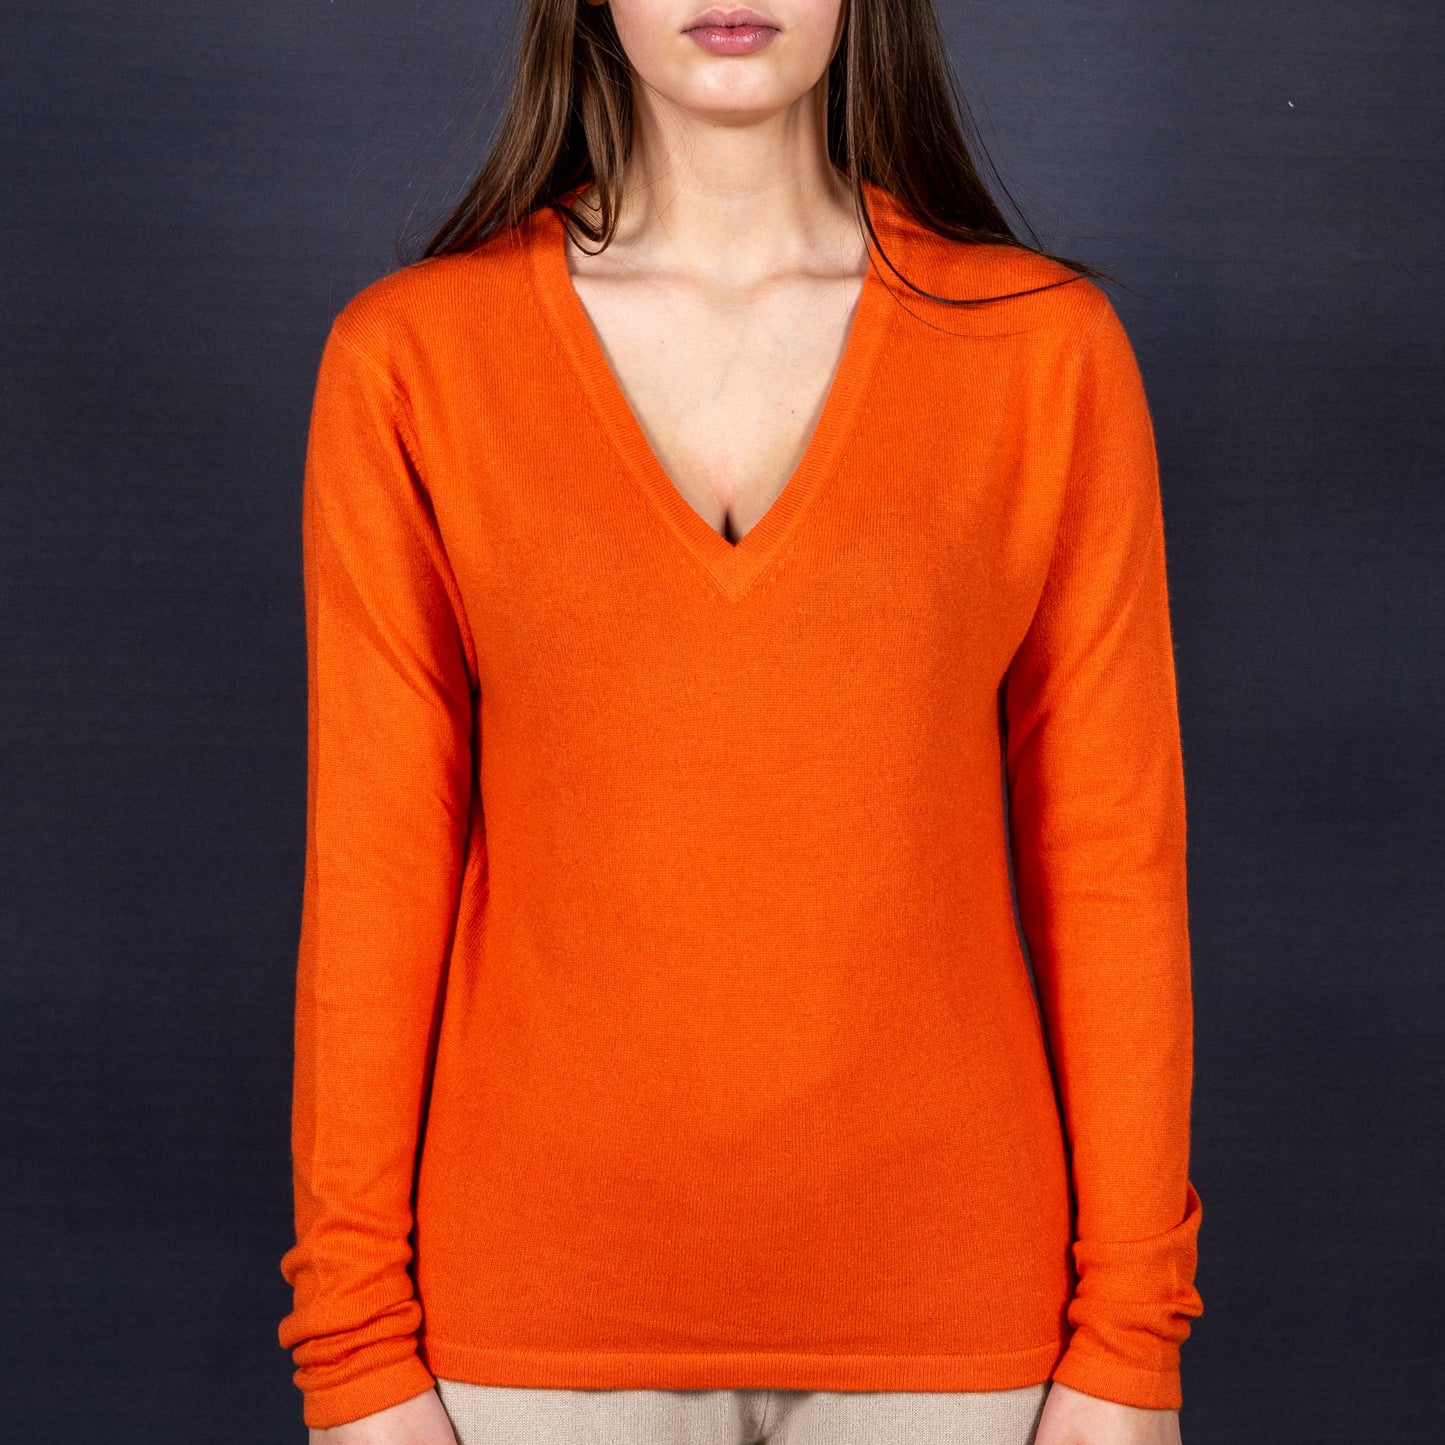 Pullover 30% Seide 70% Kaschmir - passend zu Ihrem STELLA ESVARA Tuch in vielen verschiedenen Farben - Tiefer V Ausschnitt, Tailliert,  Feminin und Edel